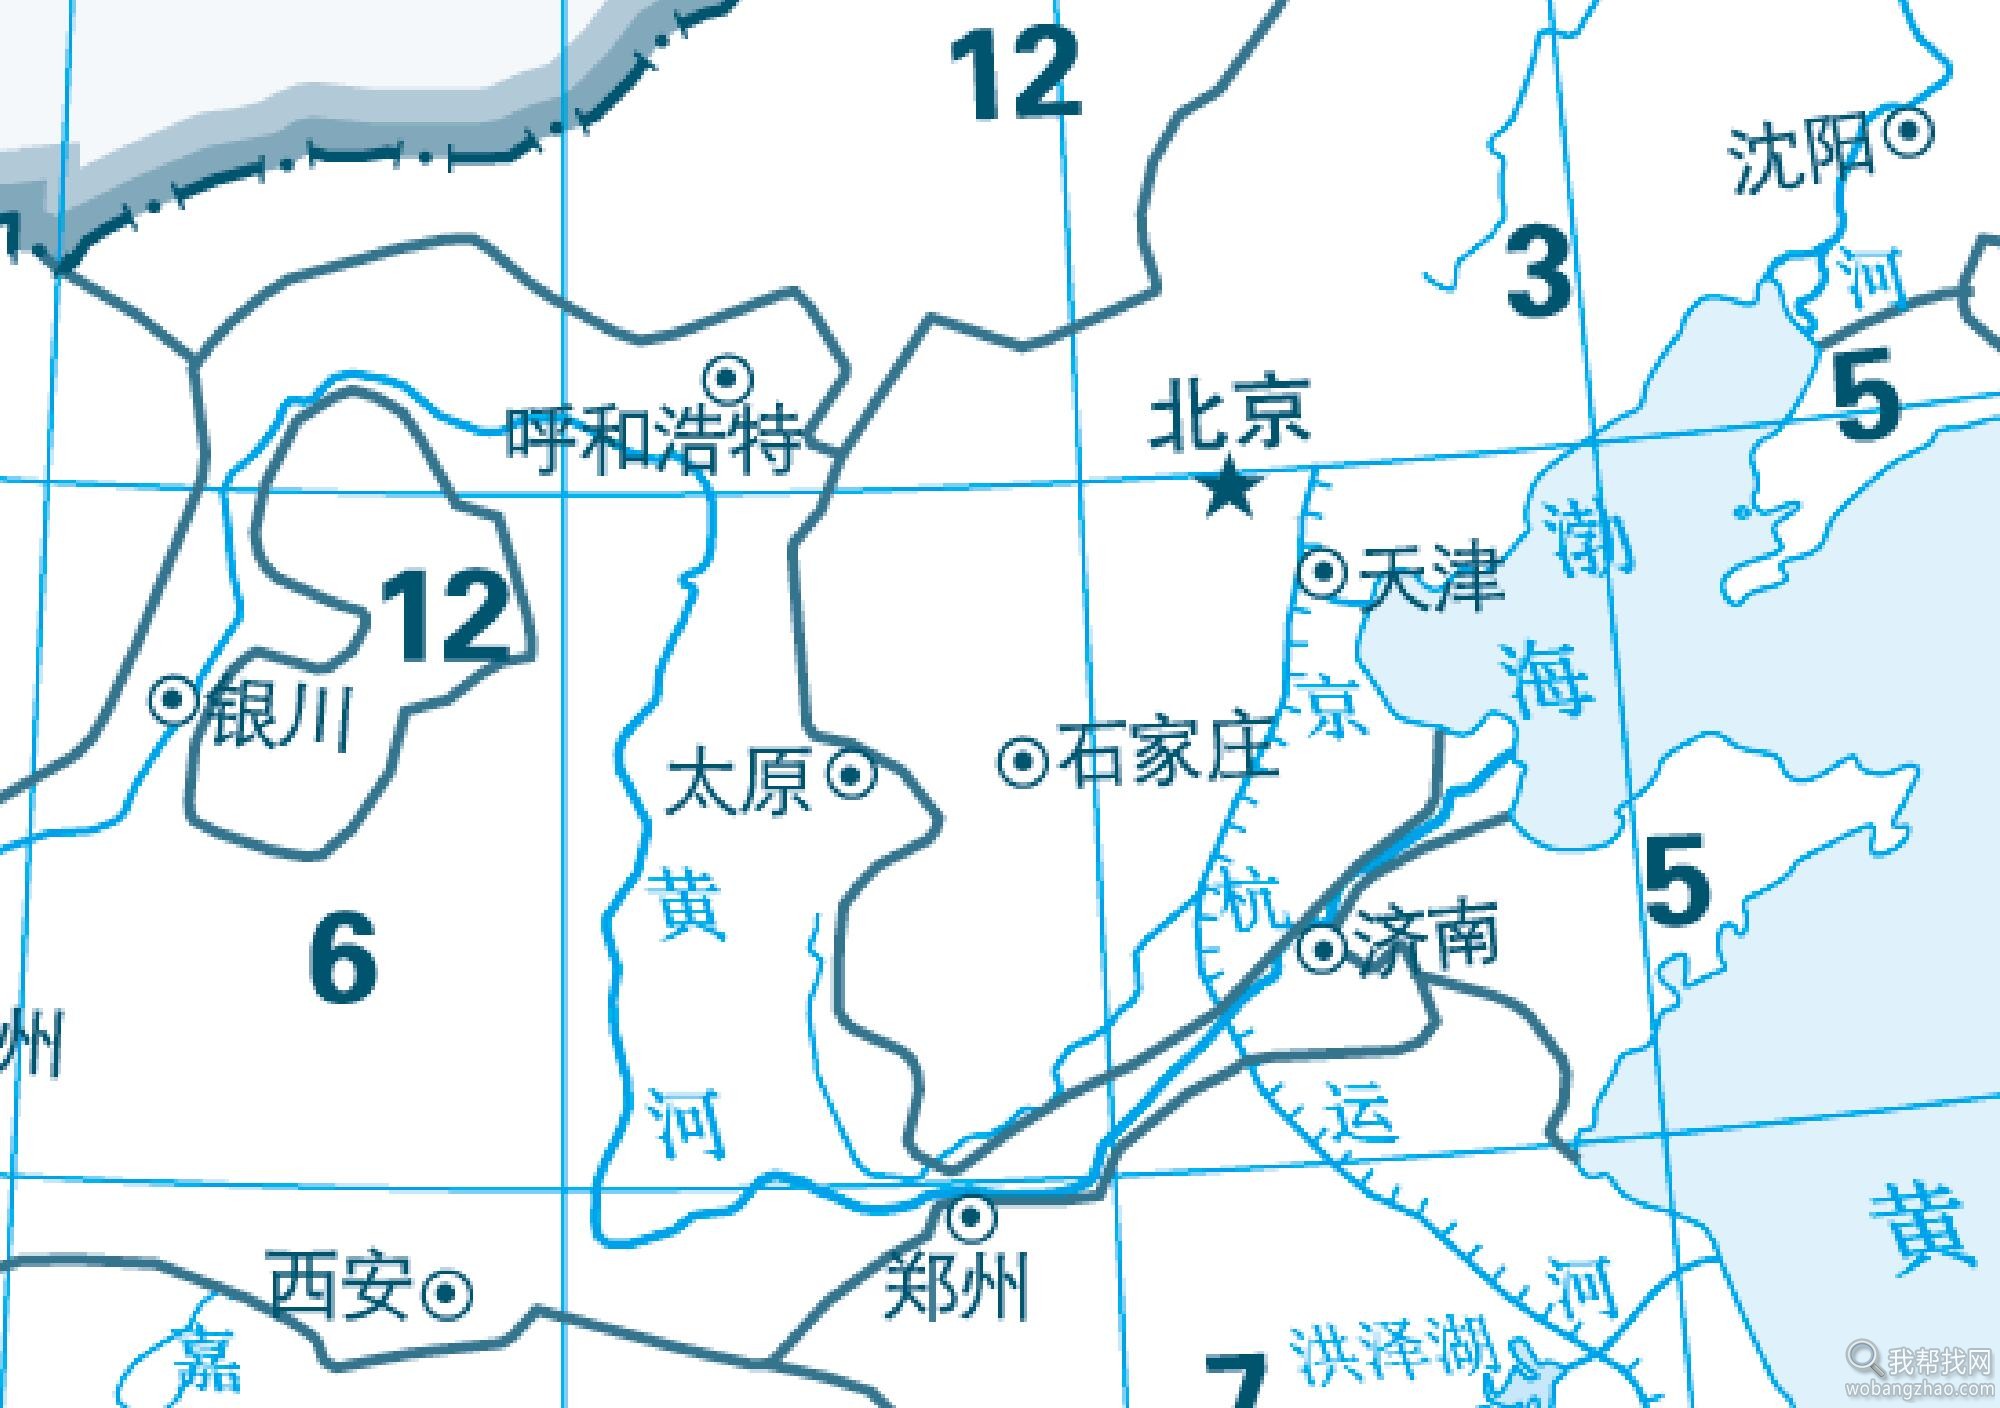 中国地图eps版本局部放大.jpg